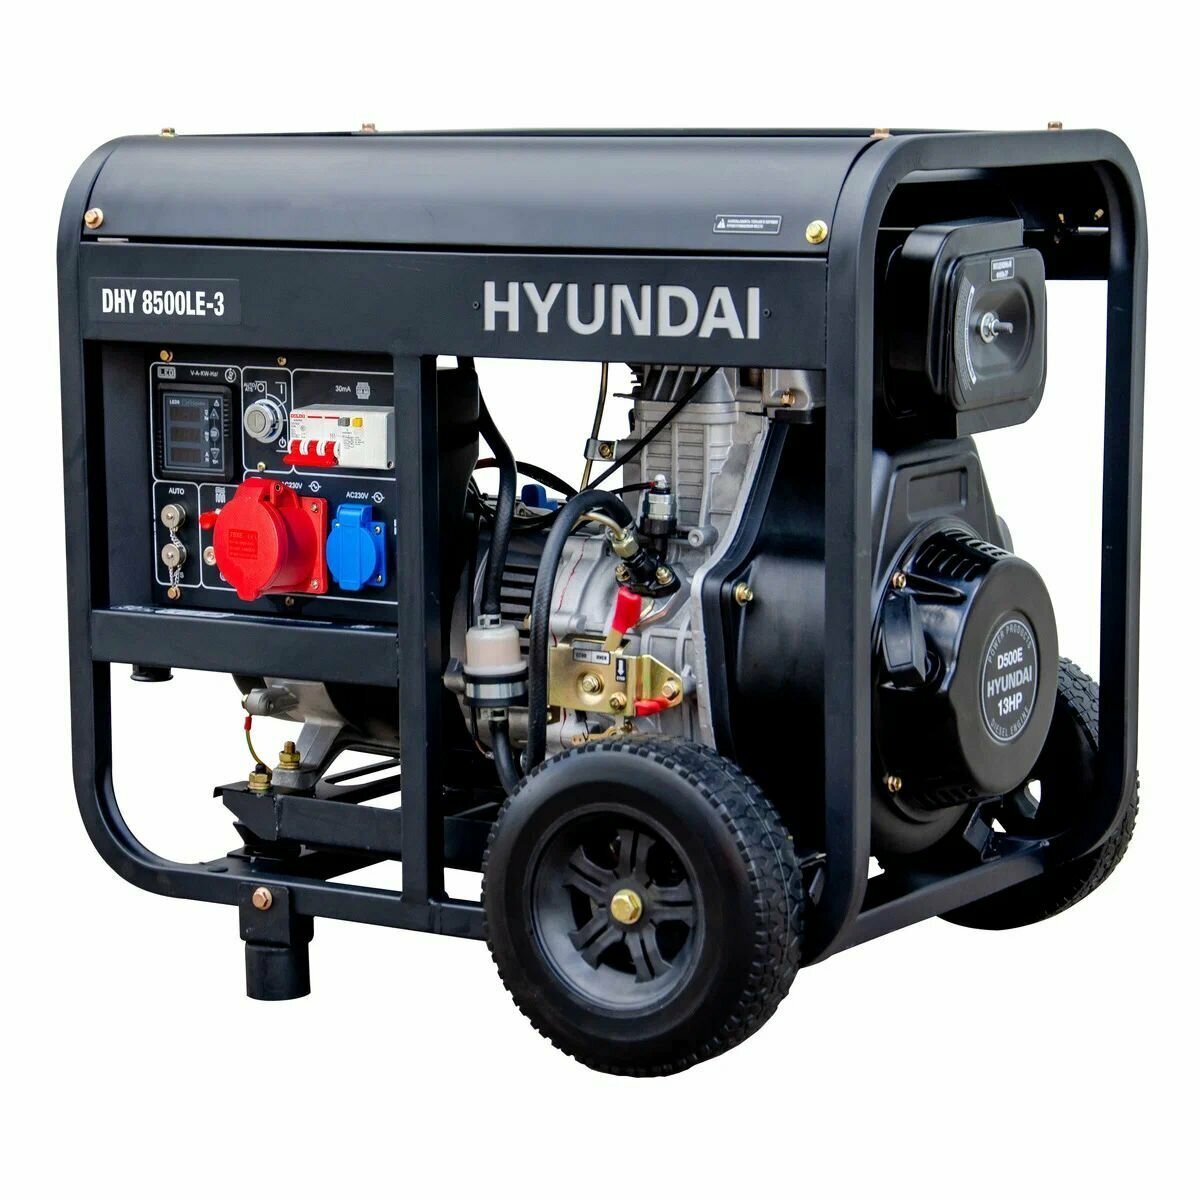 Дизельный генератор Hyundai DHY 8500 LE-3 7.2 кВт, электрогенератор с ручным и электро запуском двигателя - фотография № 7